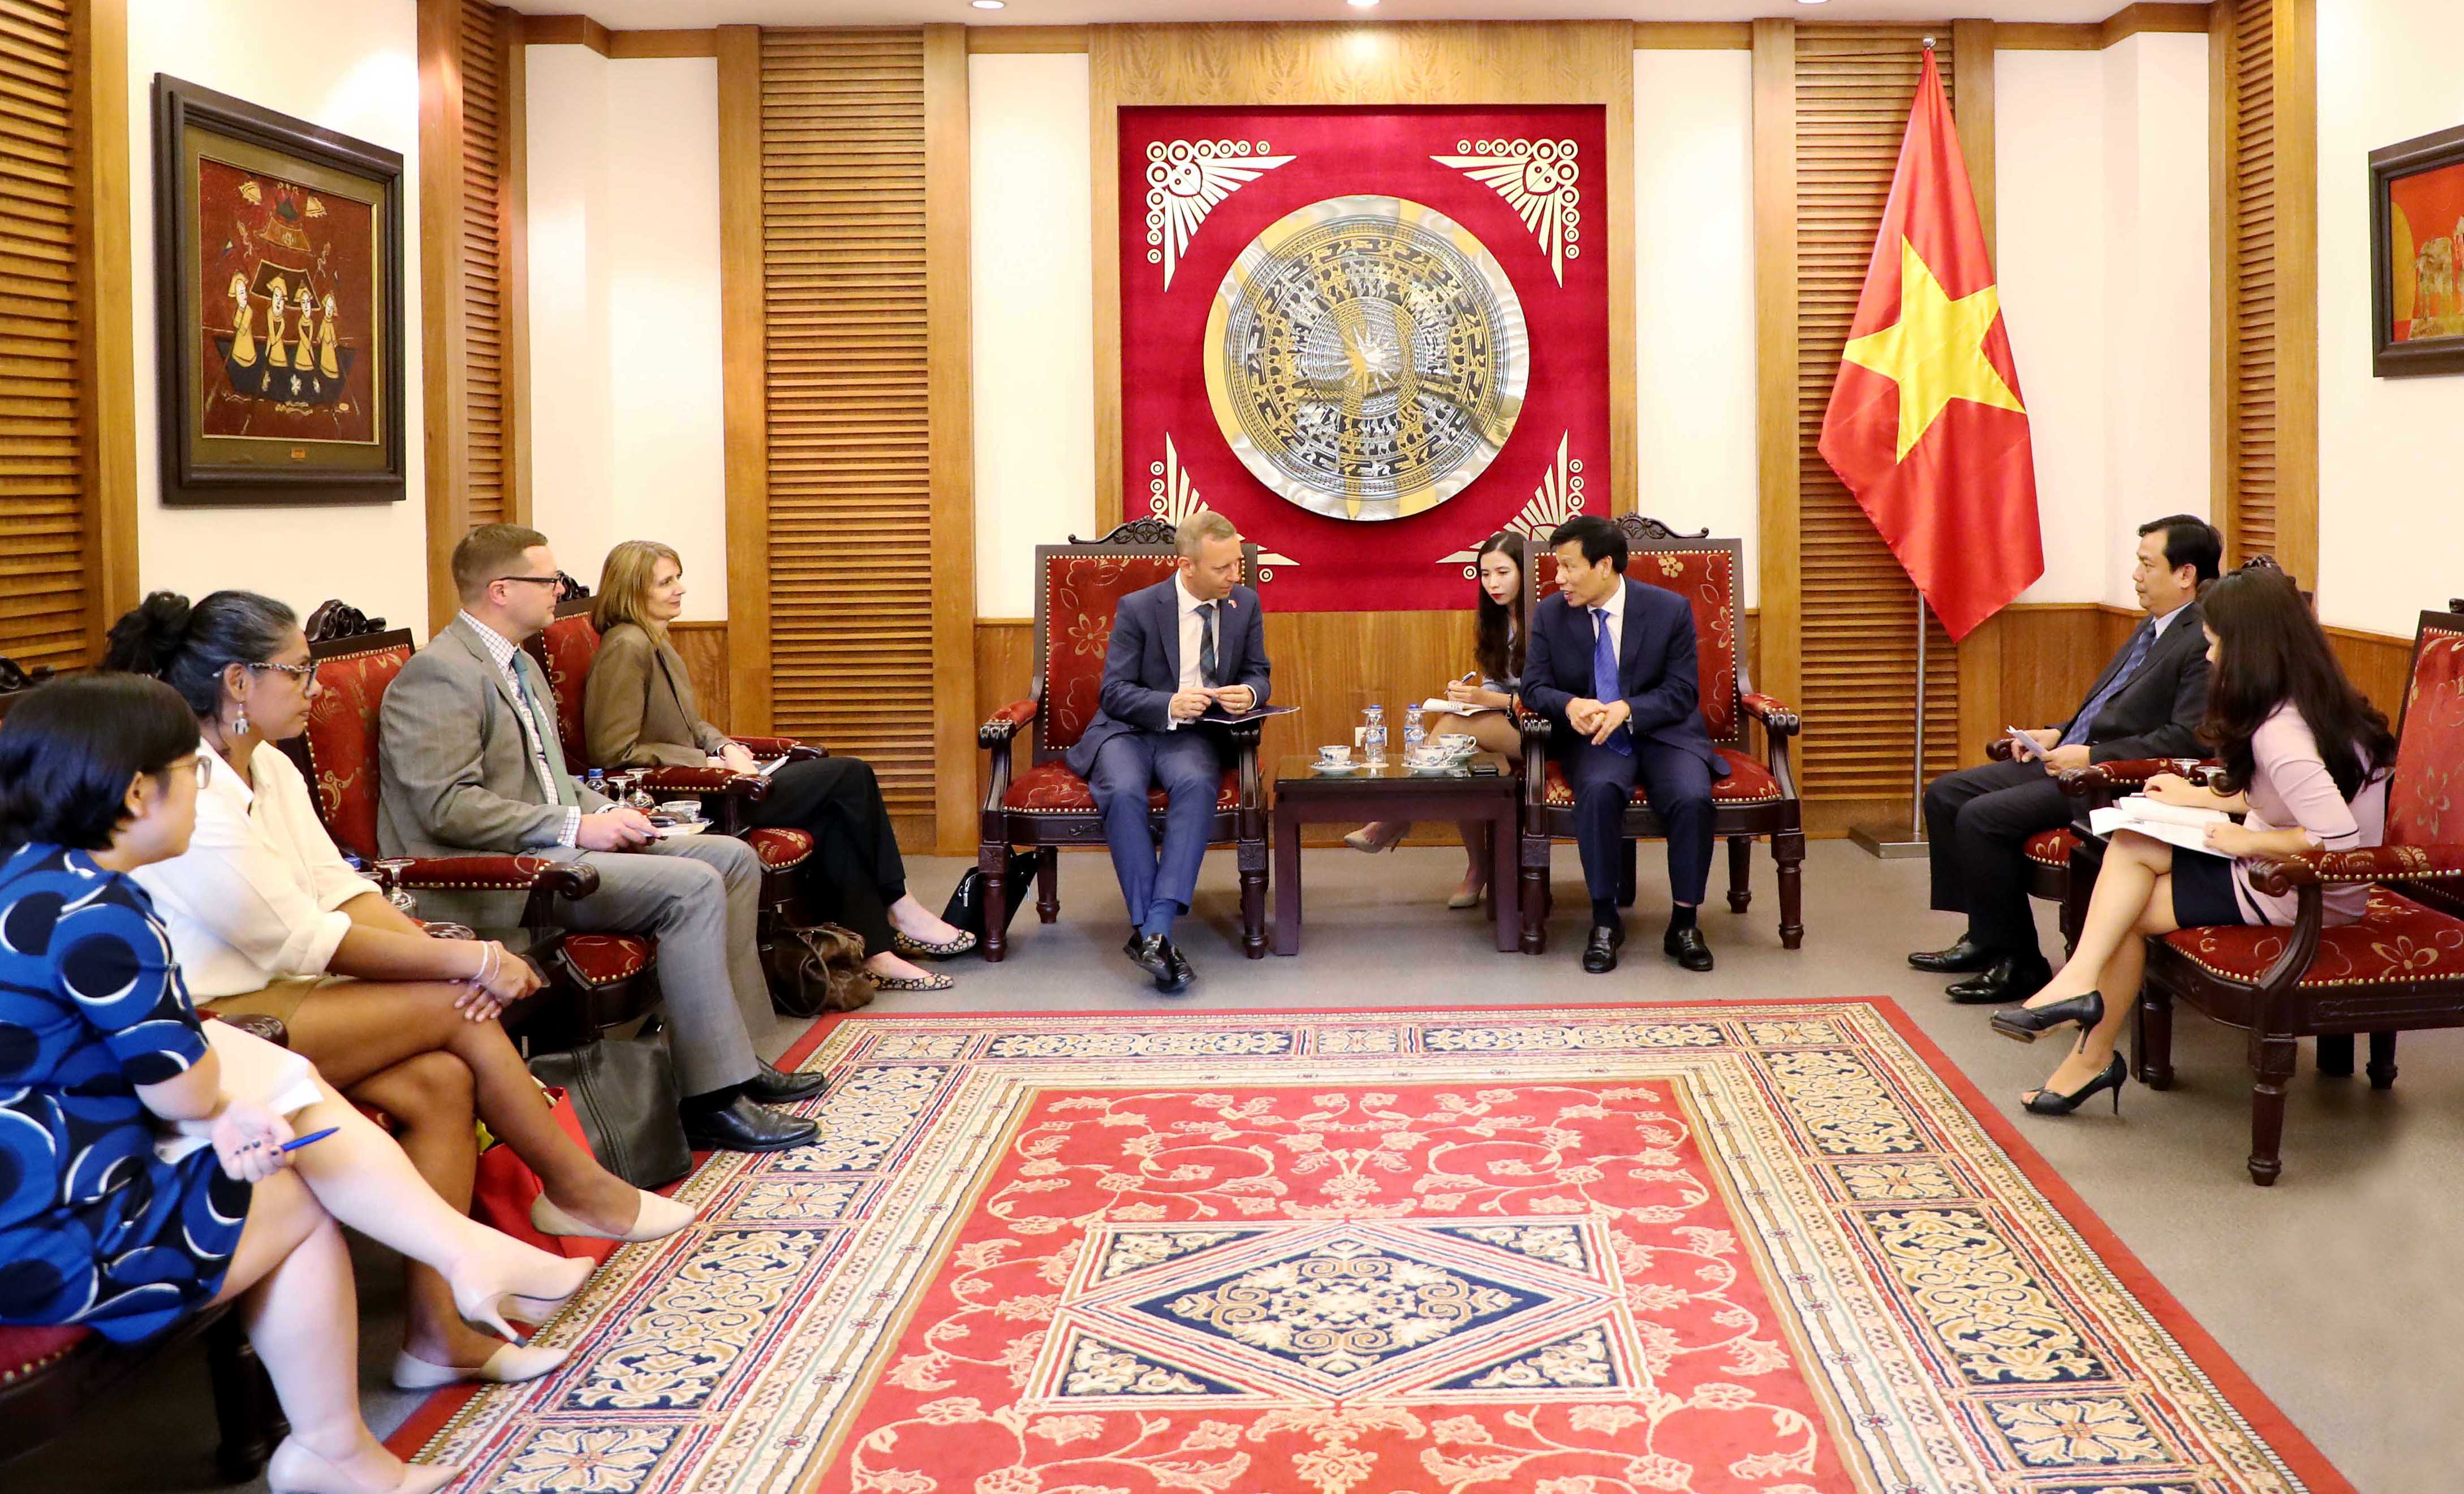 Bộ trưởng Nguyễn Ngọc Thiện tiếp Ngài Gareth Ward Đại sứ Anh tại Việt Nam đến chào xã giao nhân dịp mới nhận nhiệm kỳ tại Việt Nam